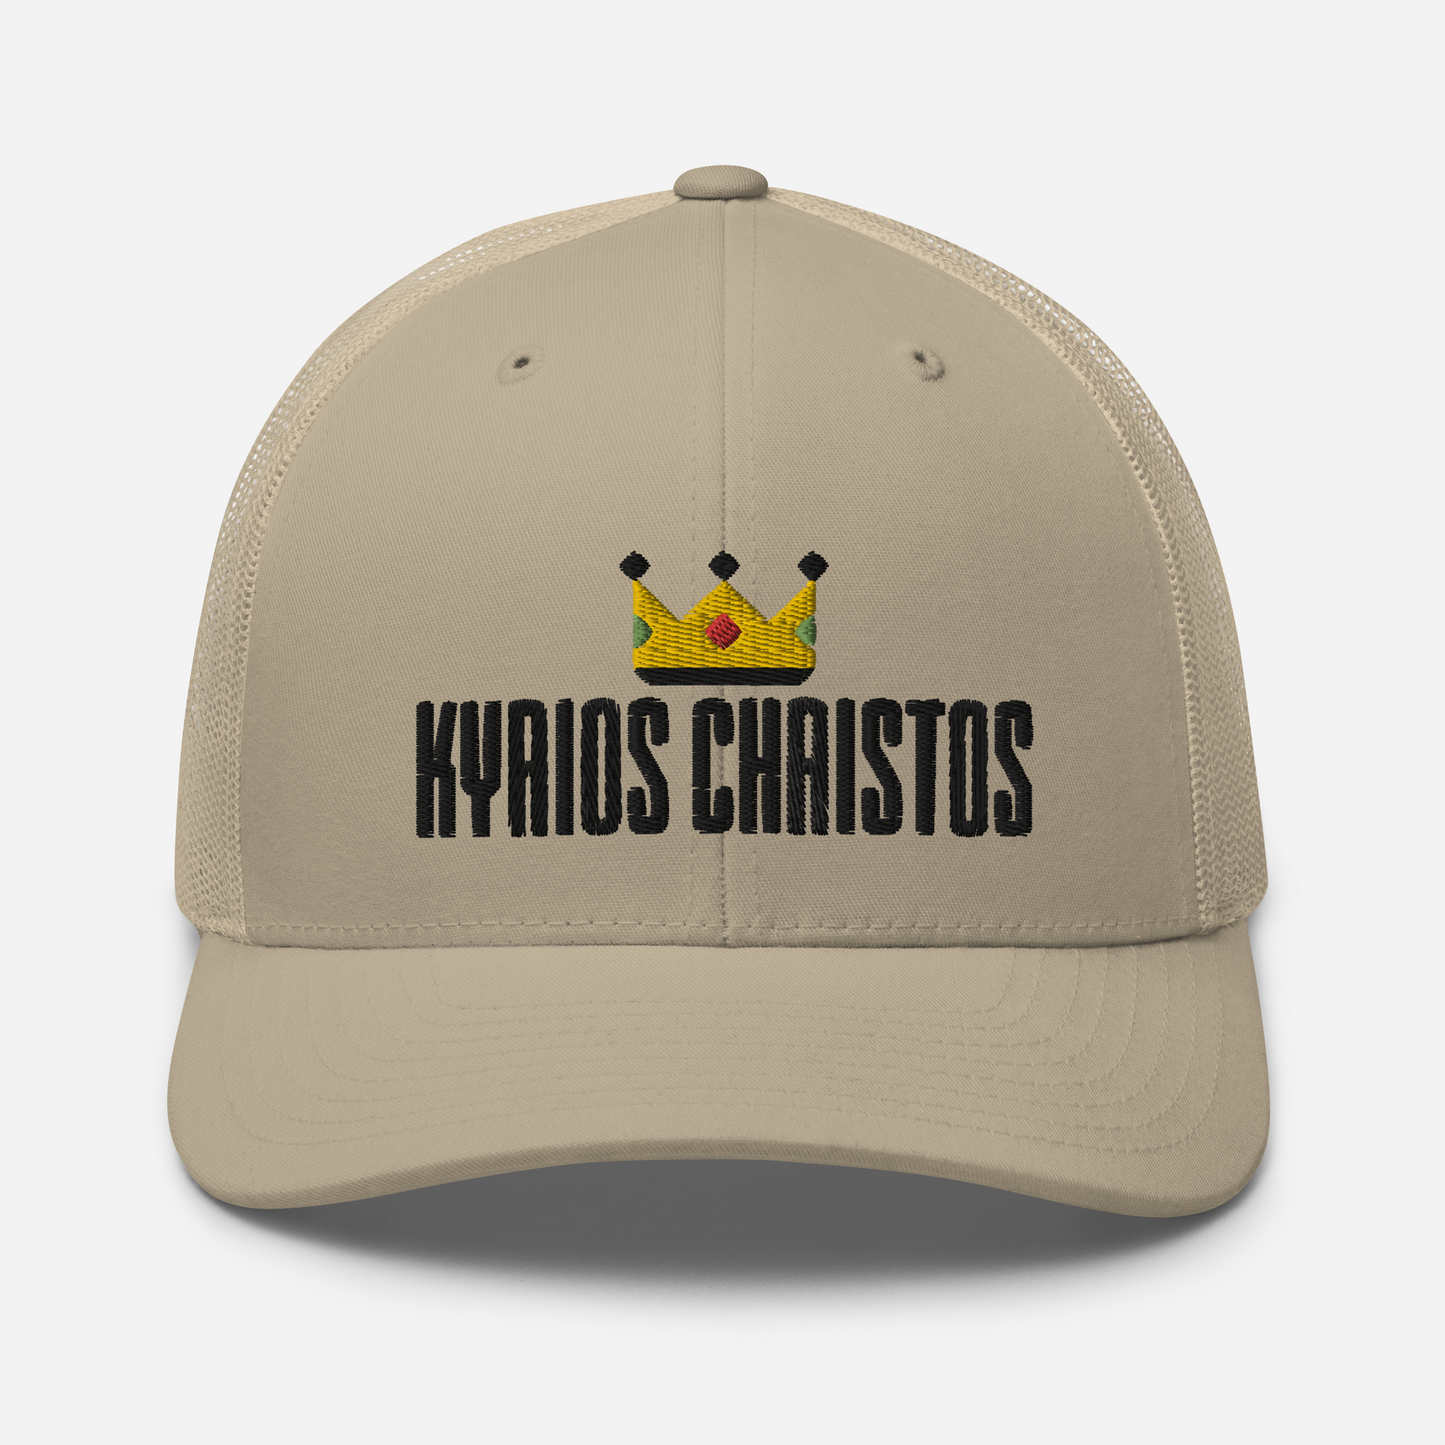 Kyrios Christos Trucker Hat